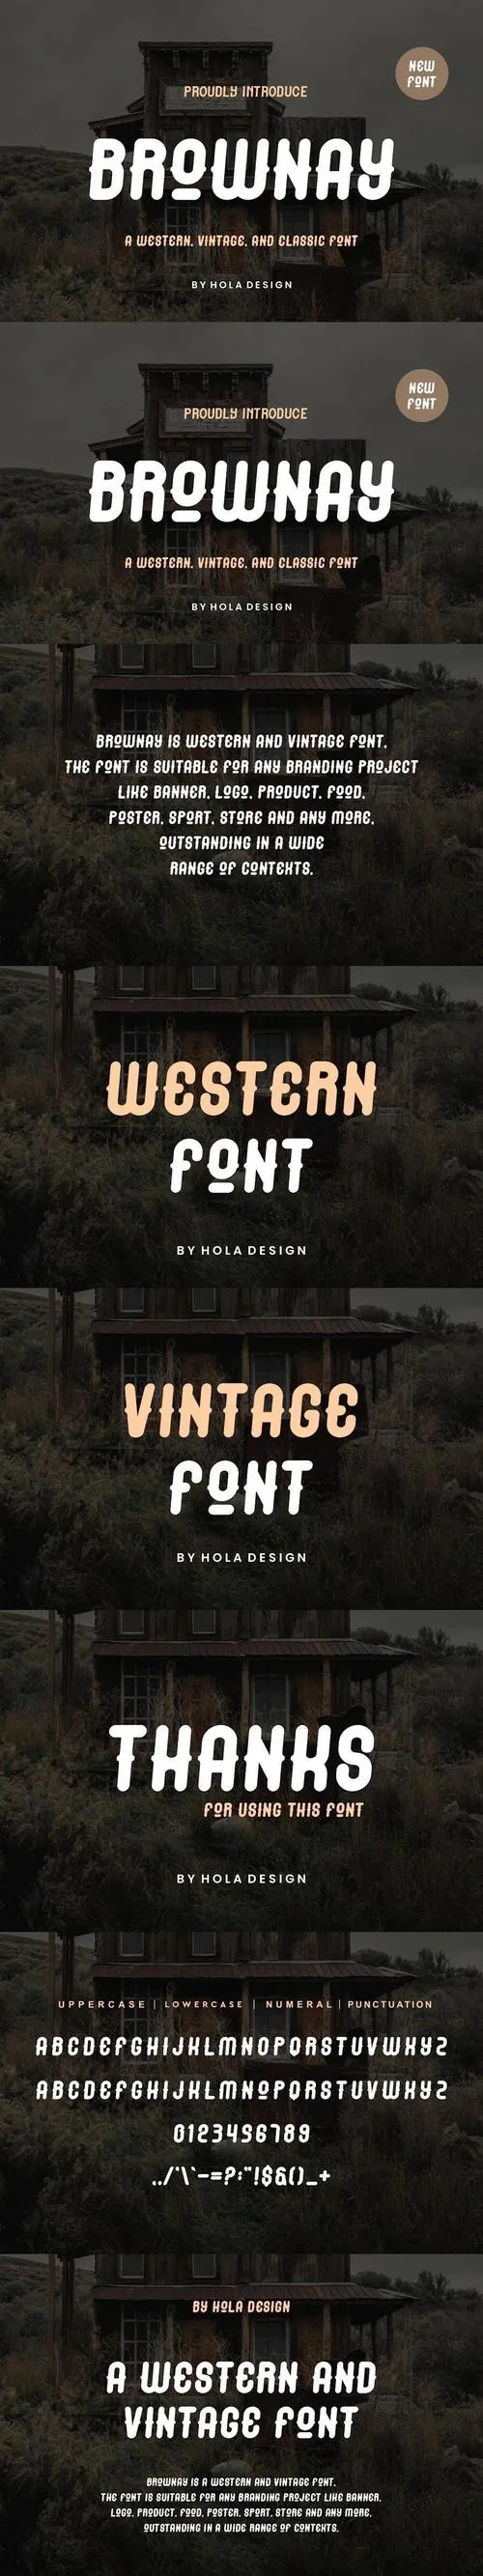 Brownay - Western & Vintage Font